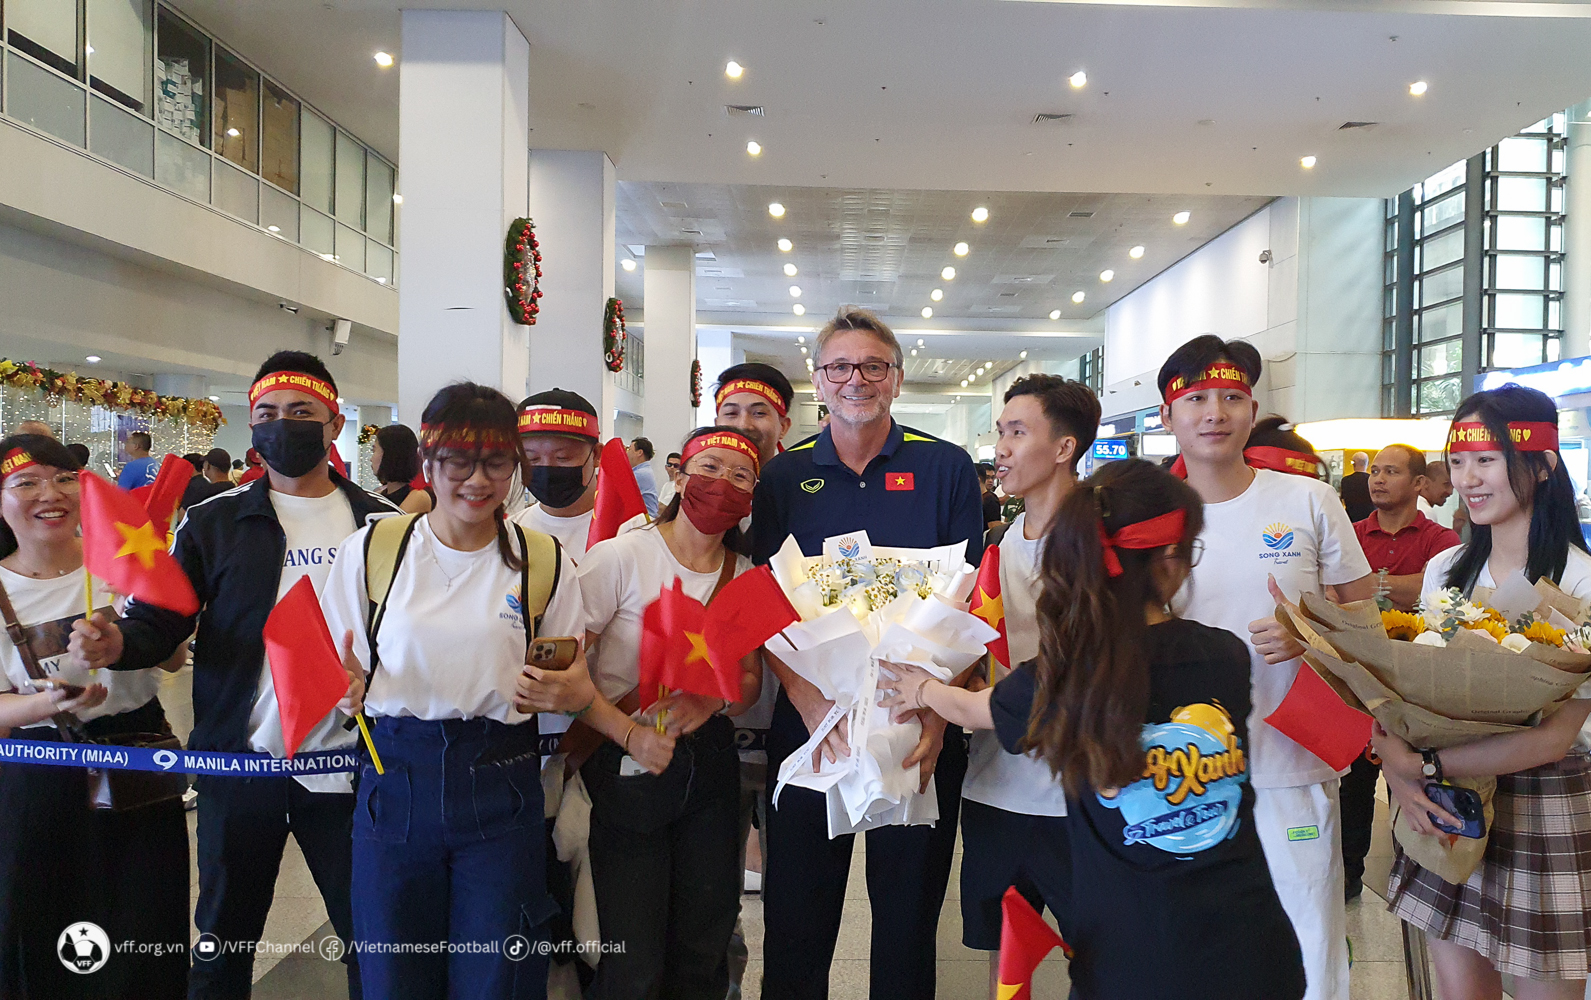 Đội tuyển Việt Nam được chào đón nồng nhiệt tại Philippines, xỏ giày tập ngay trong tối - Ảnh 1.